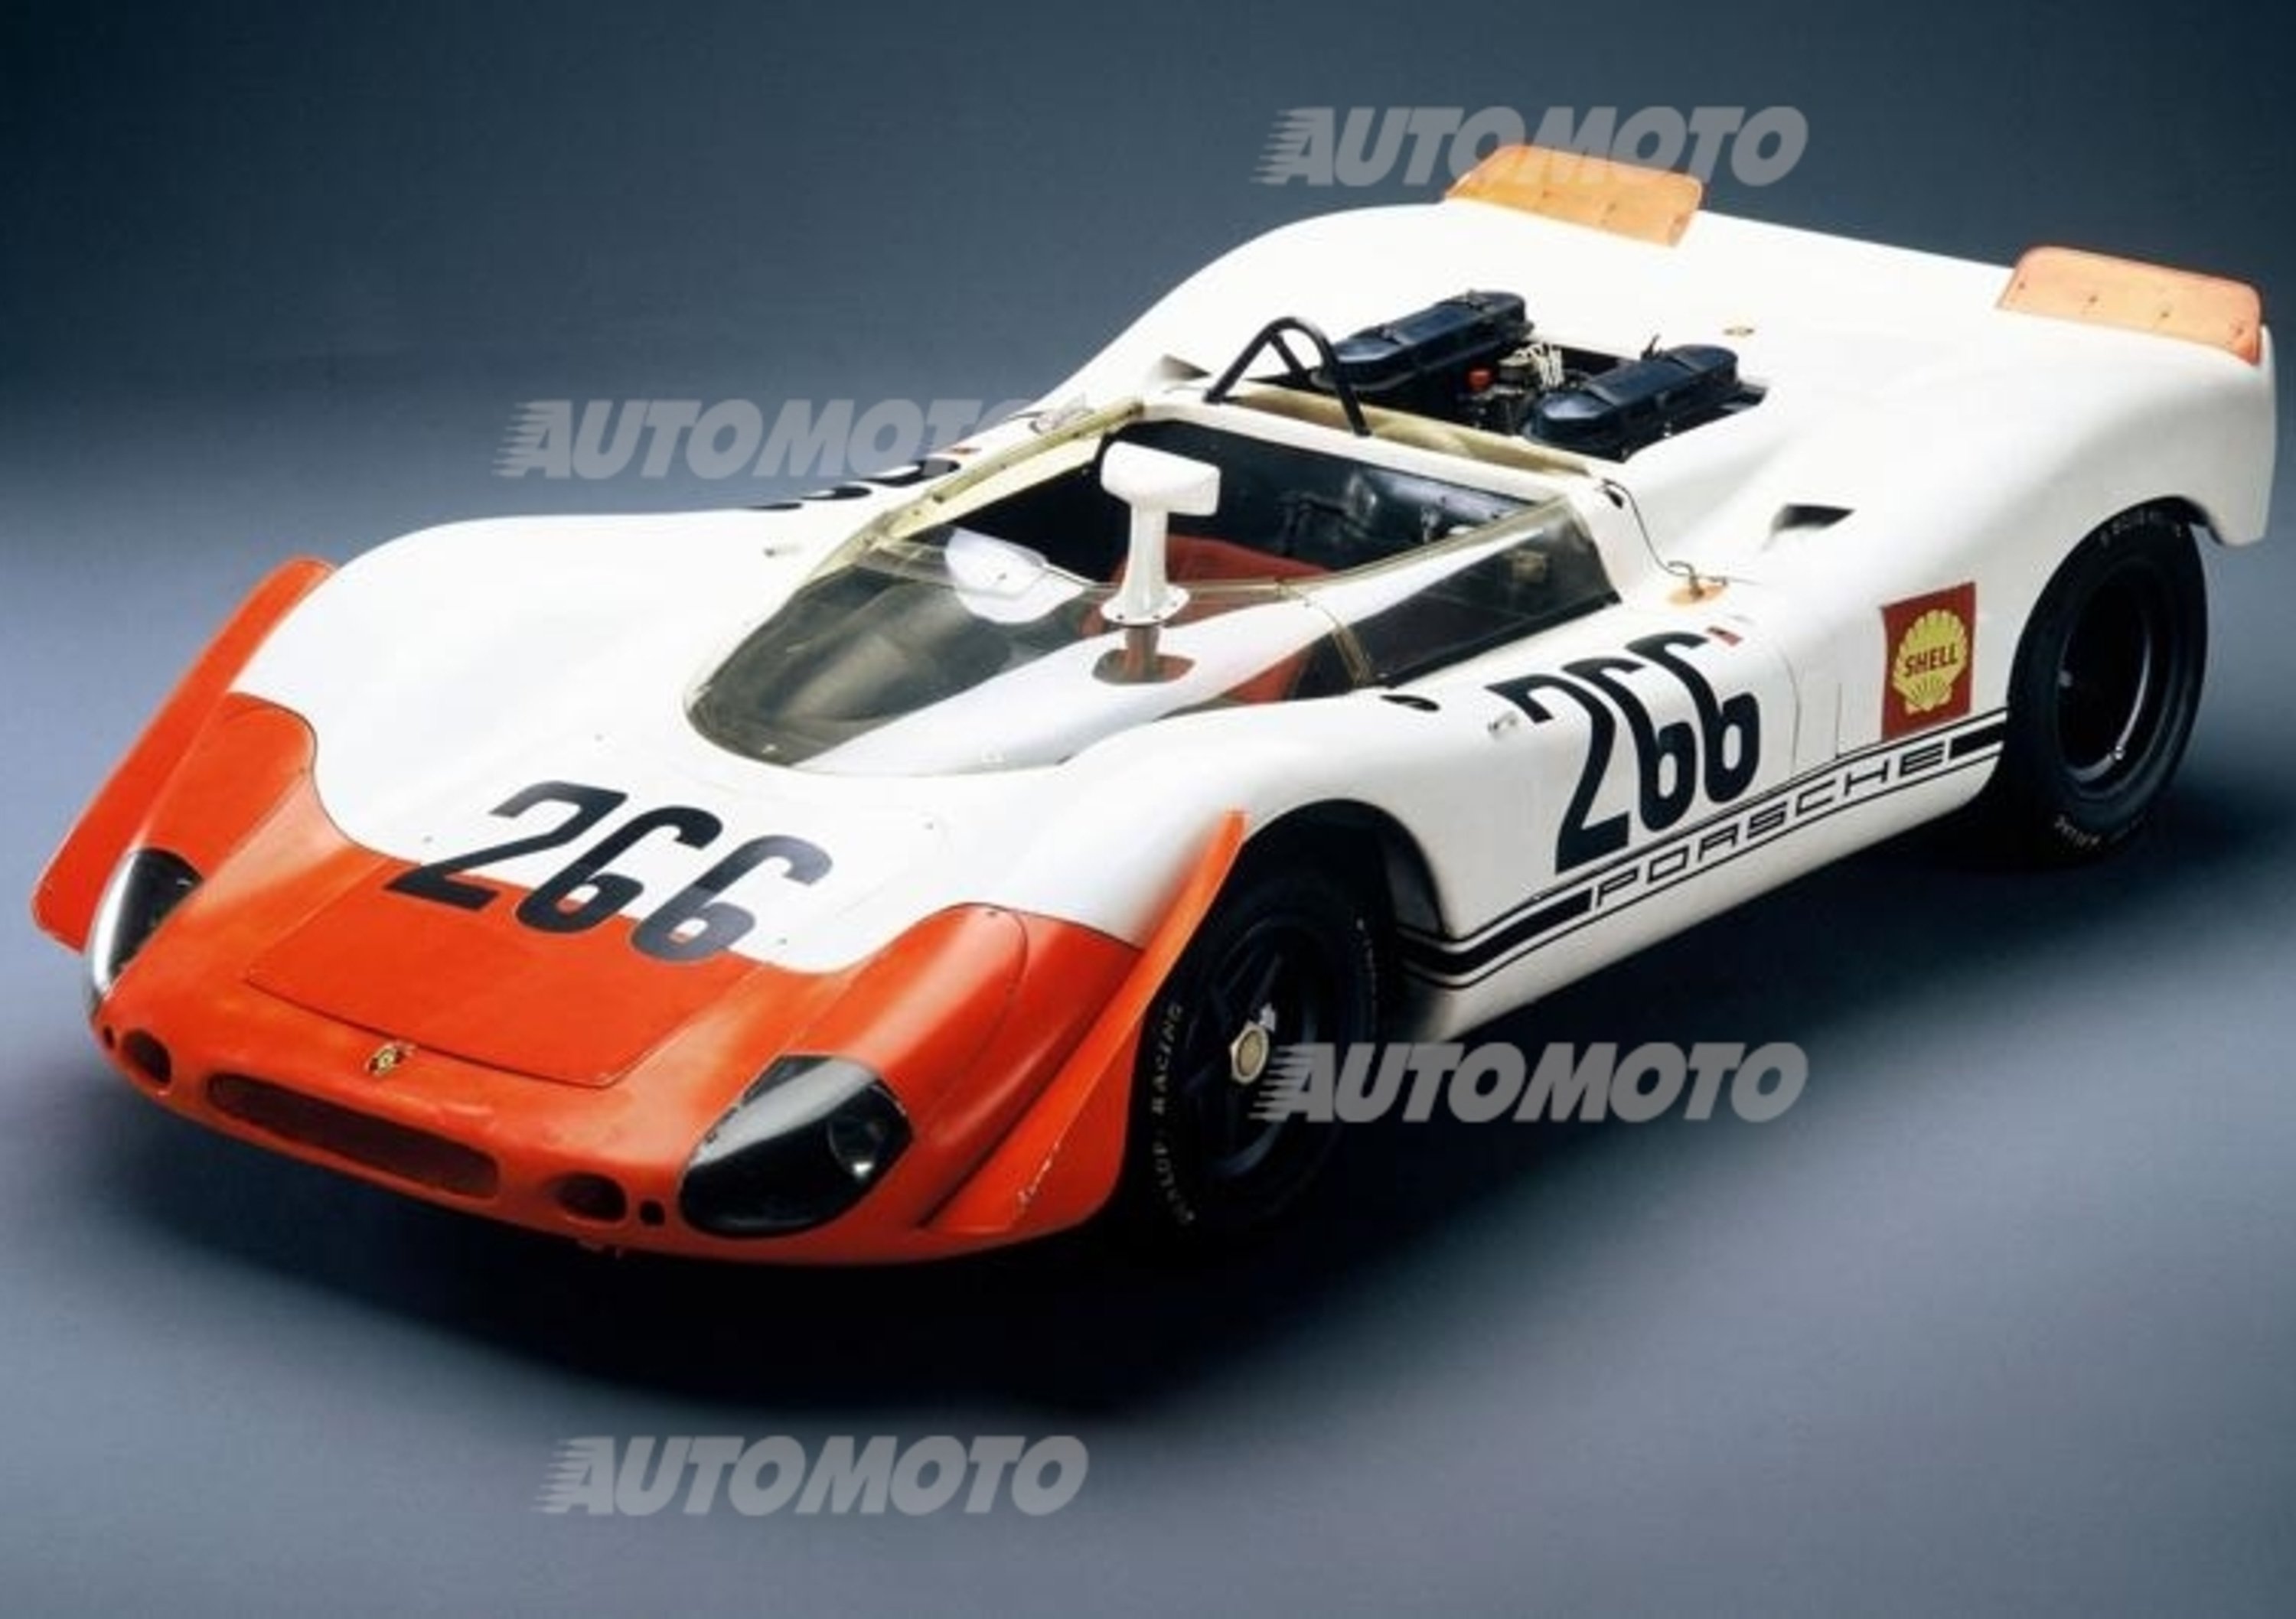 Porsche 908/02 Spyder: la barchetta che domin&ograve; la Targa Florio nel 1969